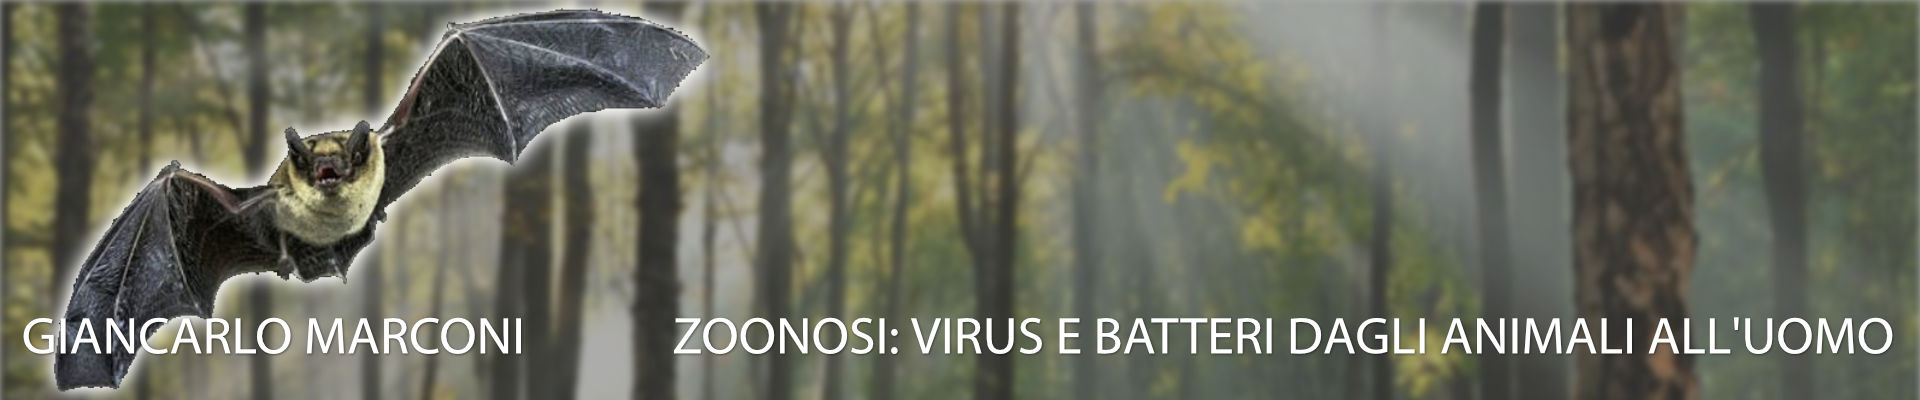 Zoonosi: virus e batteri dagli animali all’uomo - 